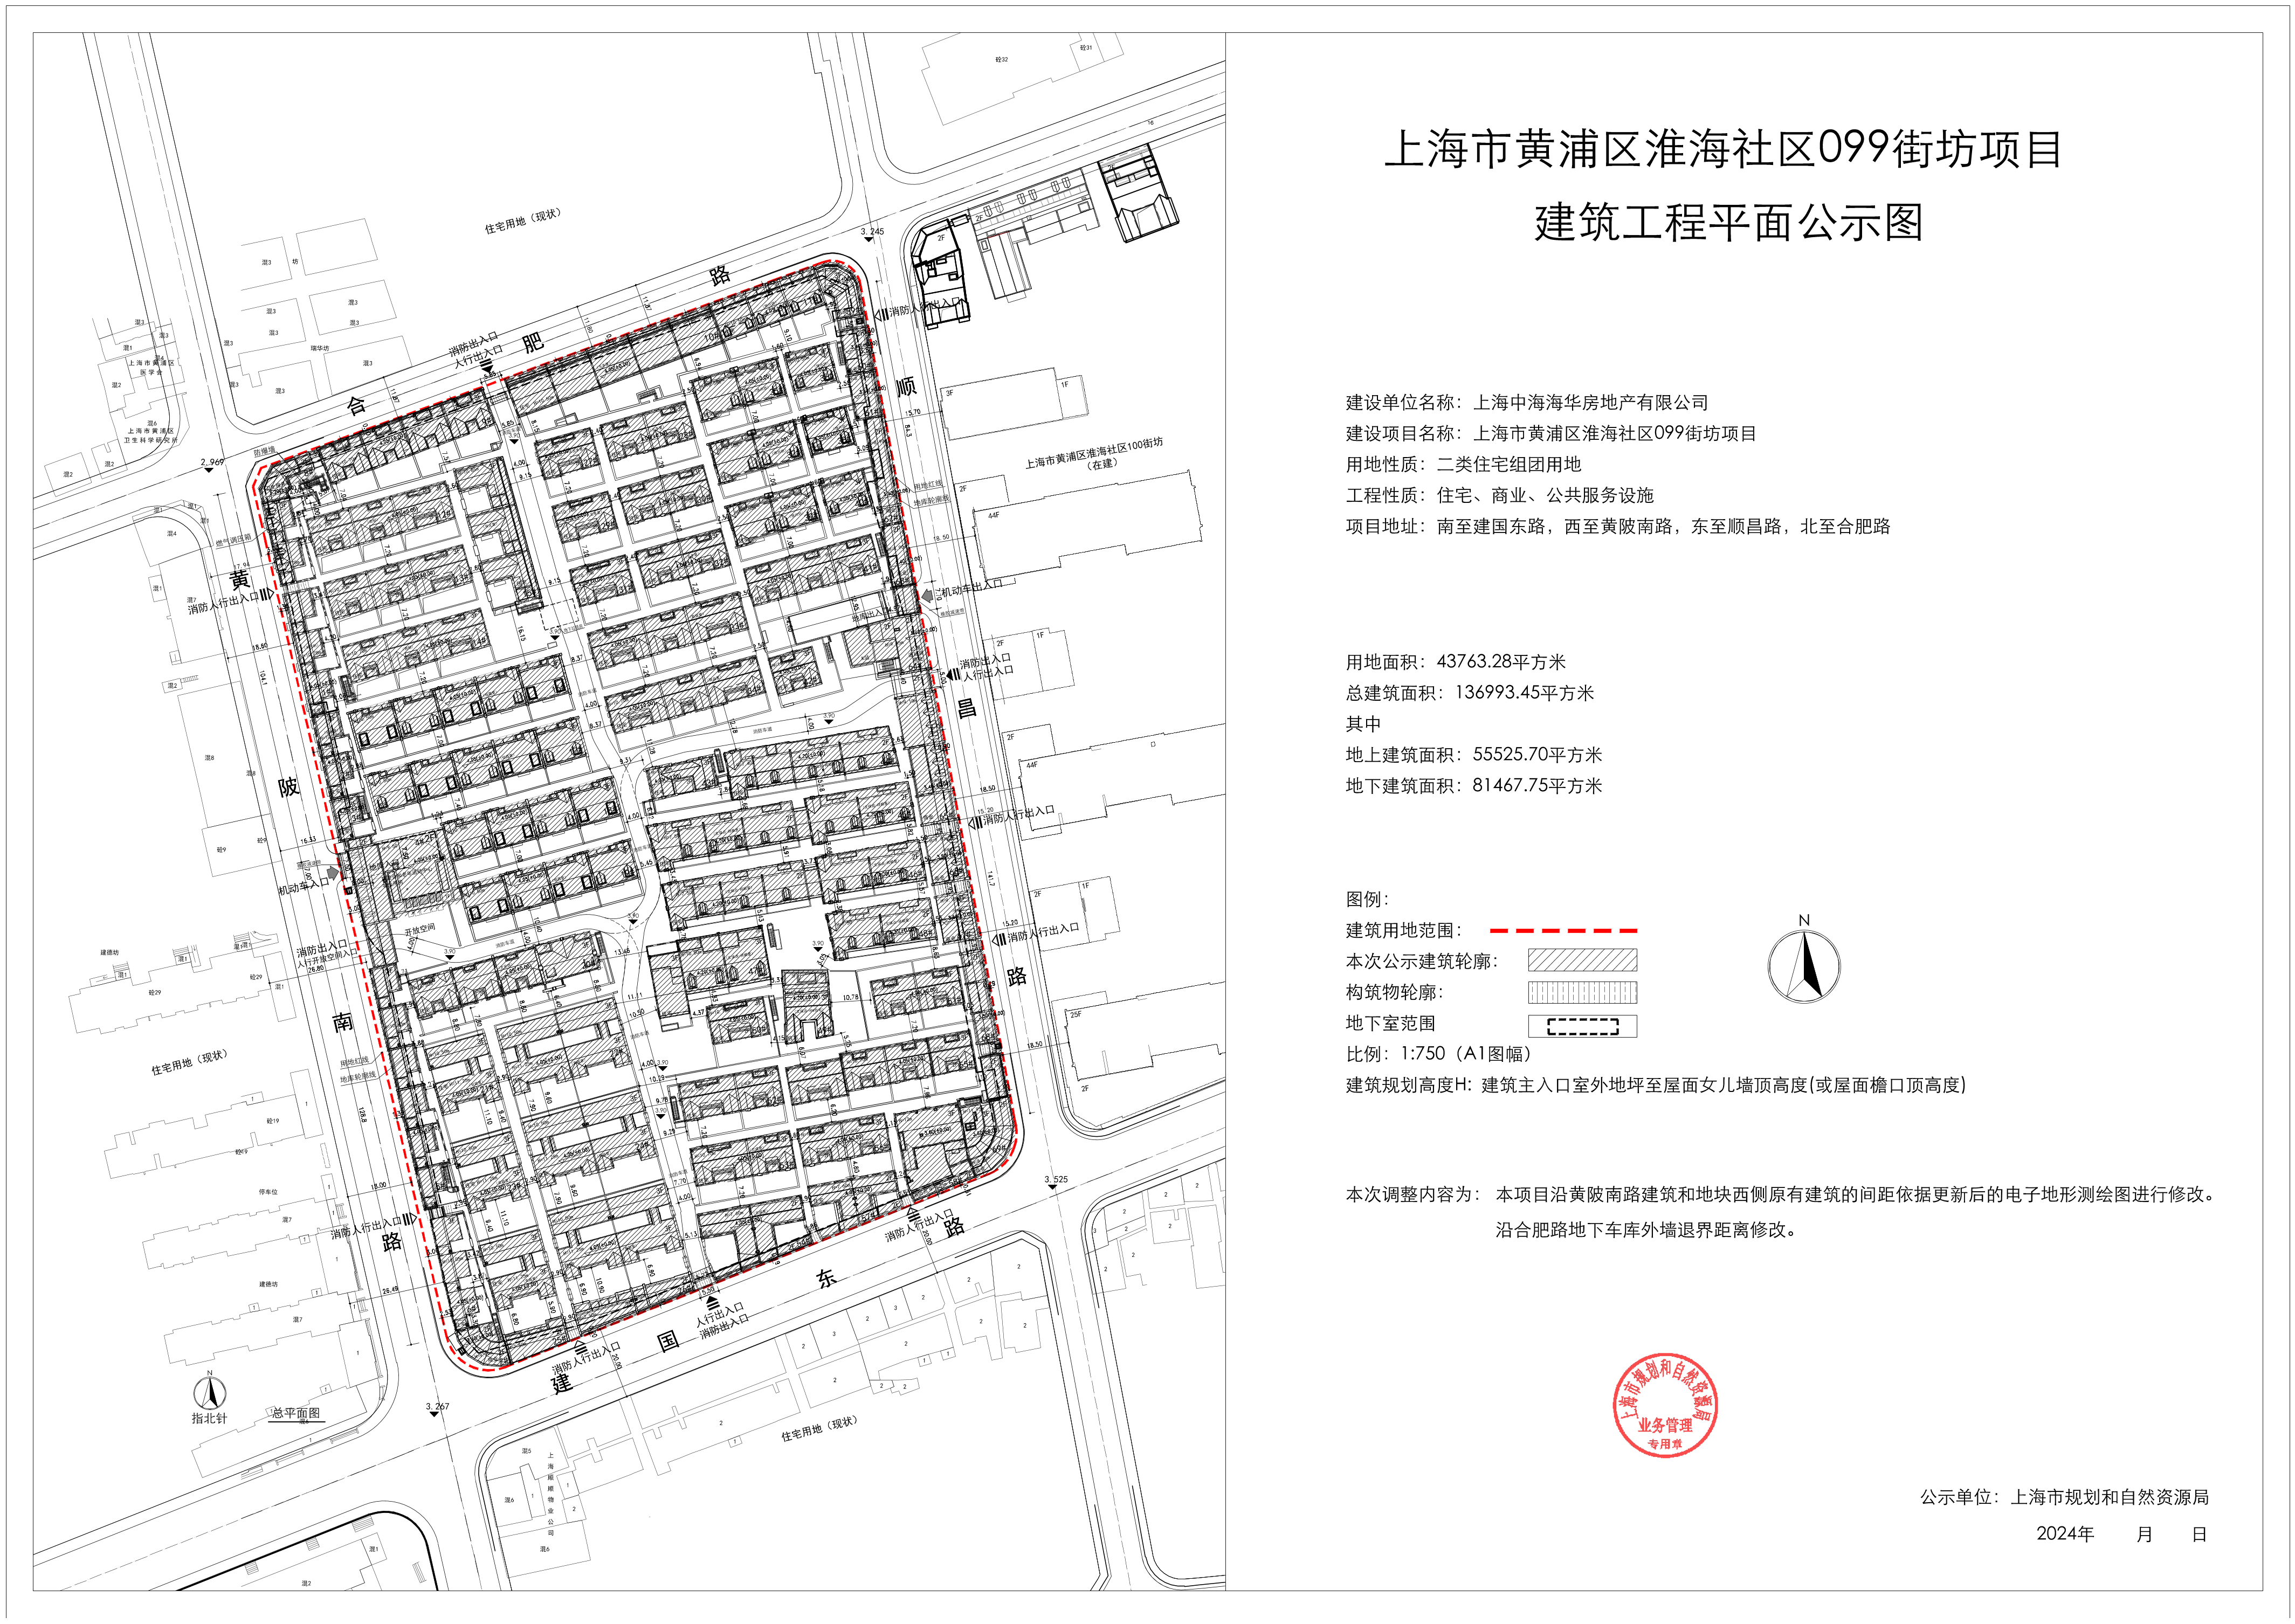 关于上海市黄浦区淮海社区099街坊建设项目建设工程设计方案的公示